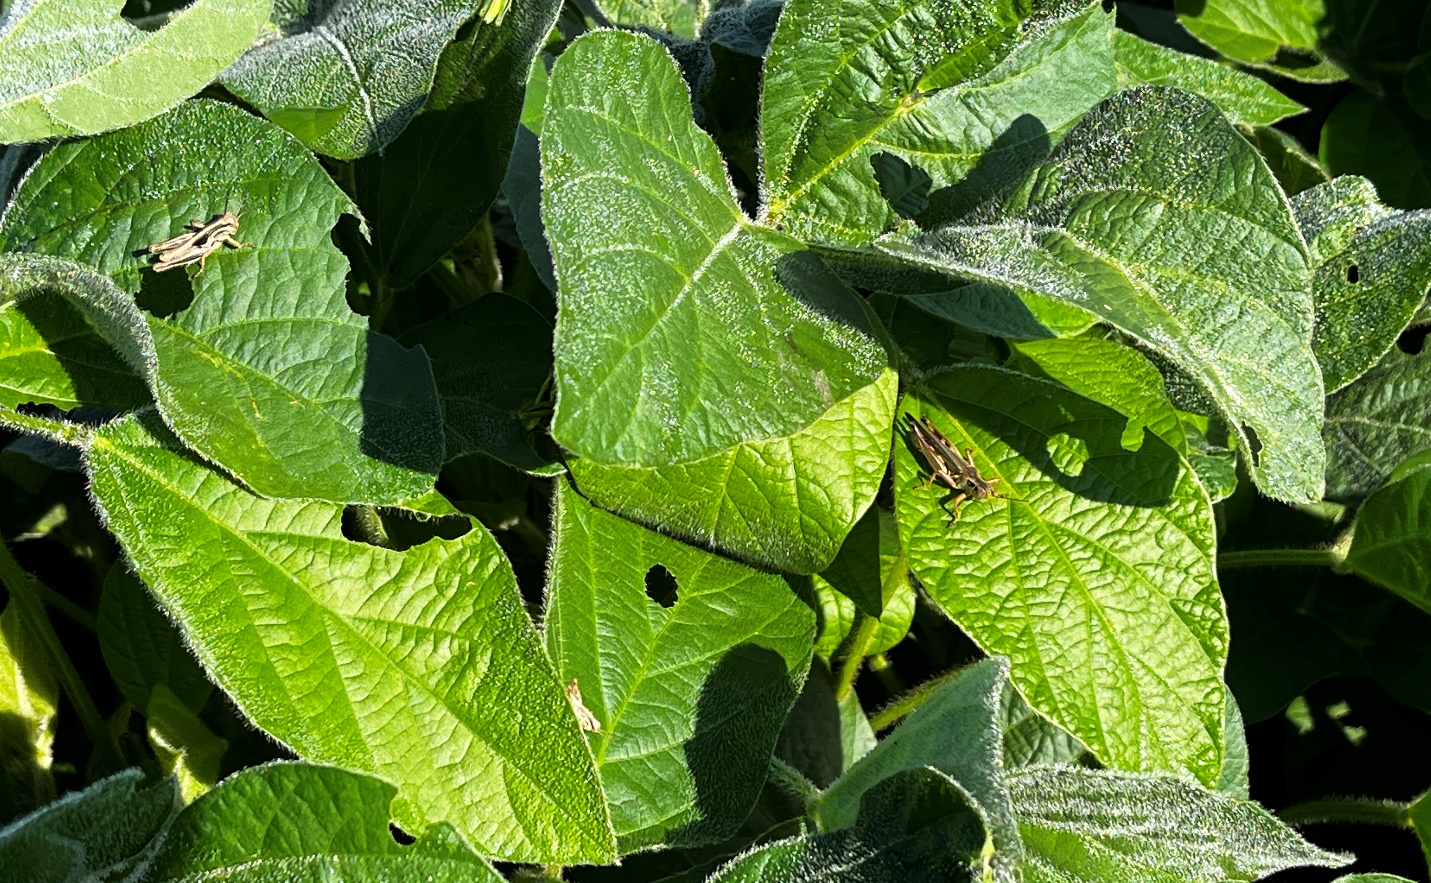 Grasshopper feeding in soybeans.